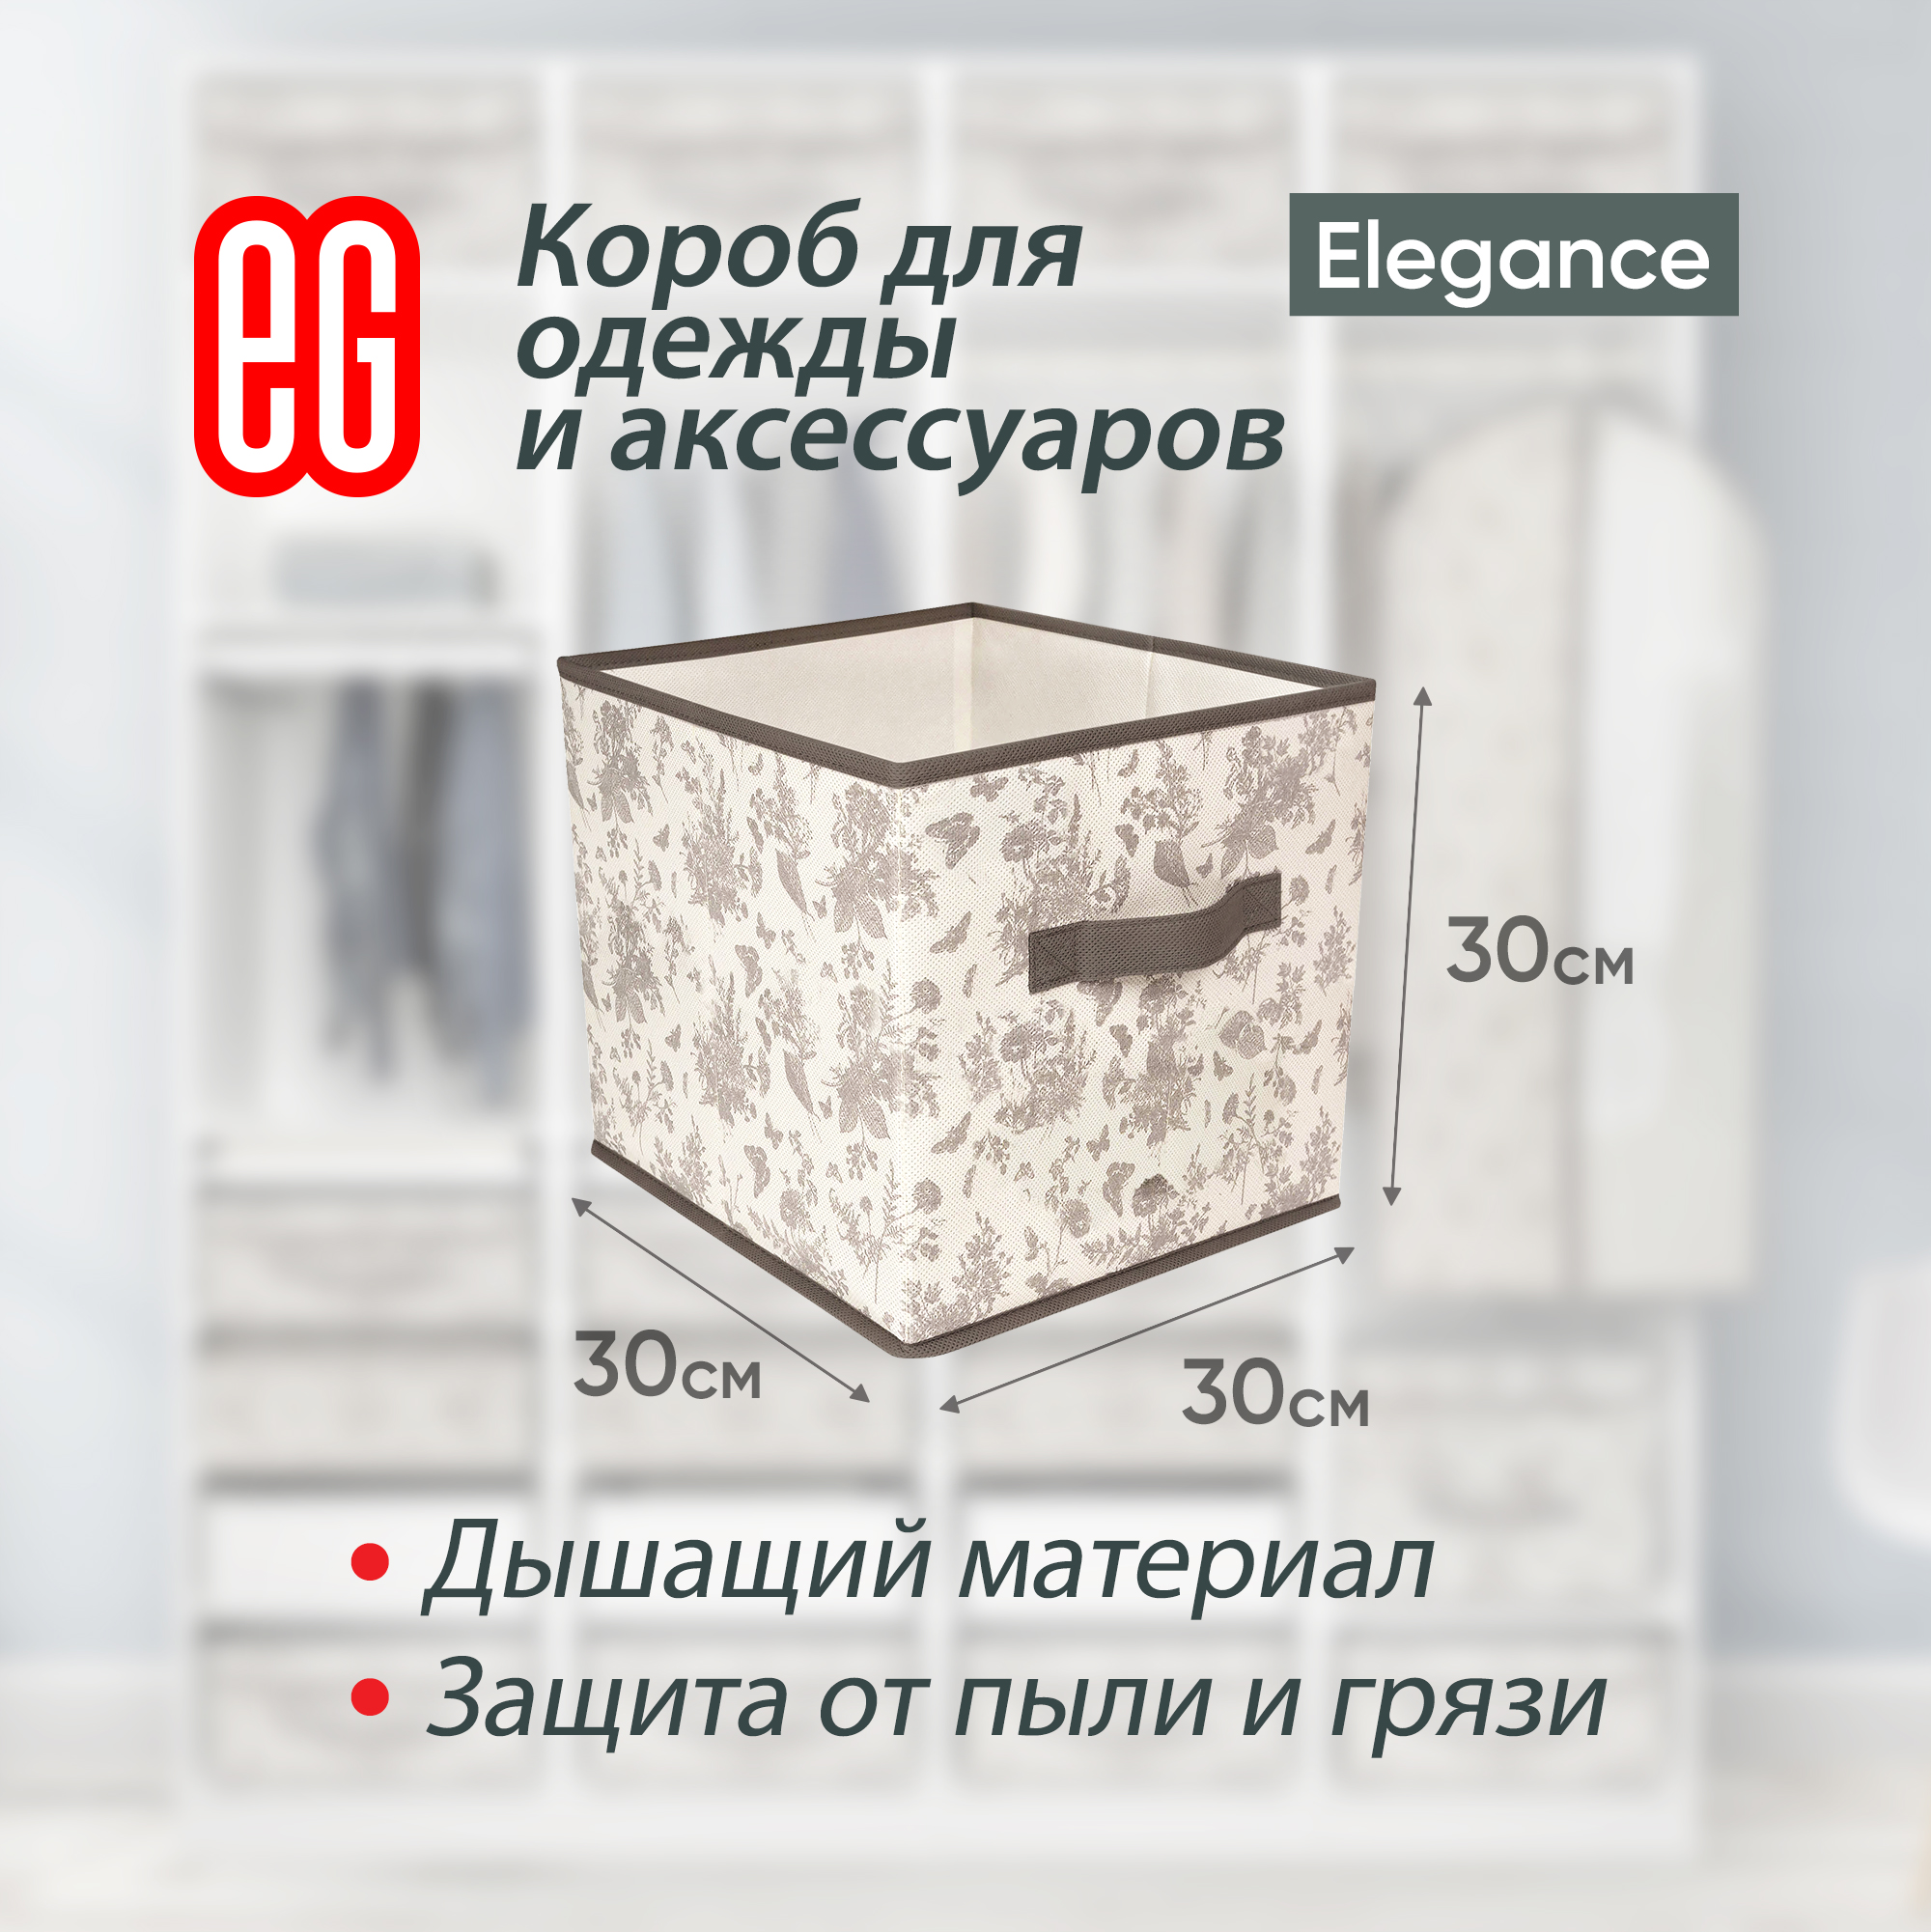 Короб для хранения ЕВРОГАРАНТ серии Elegance 30х30х30 см - фото 2